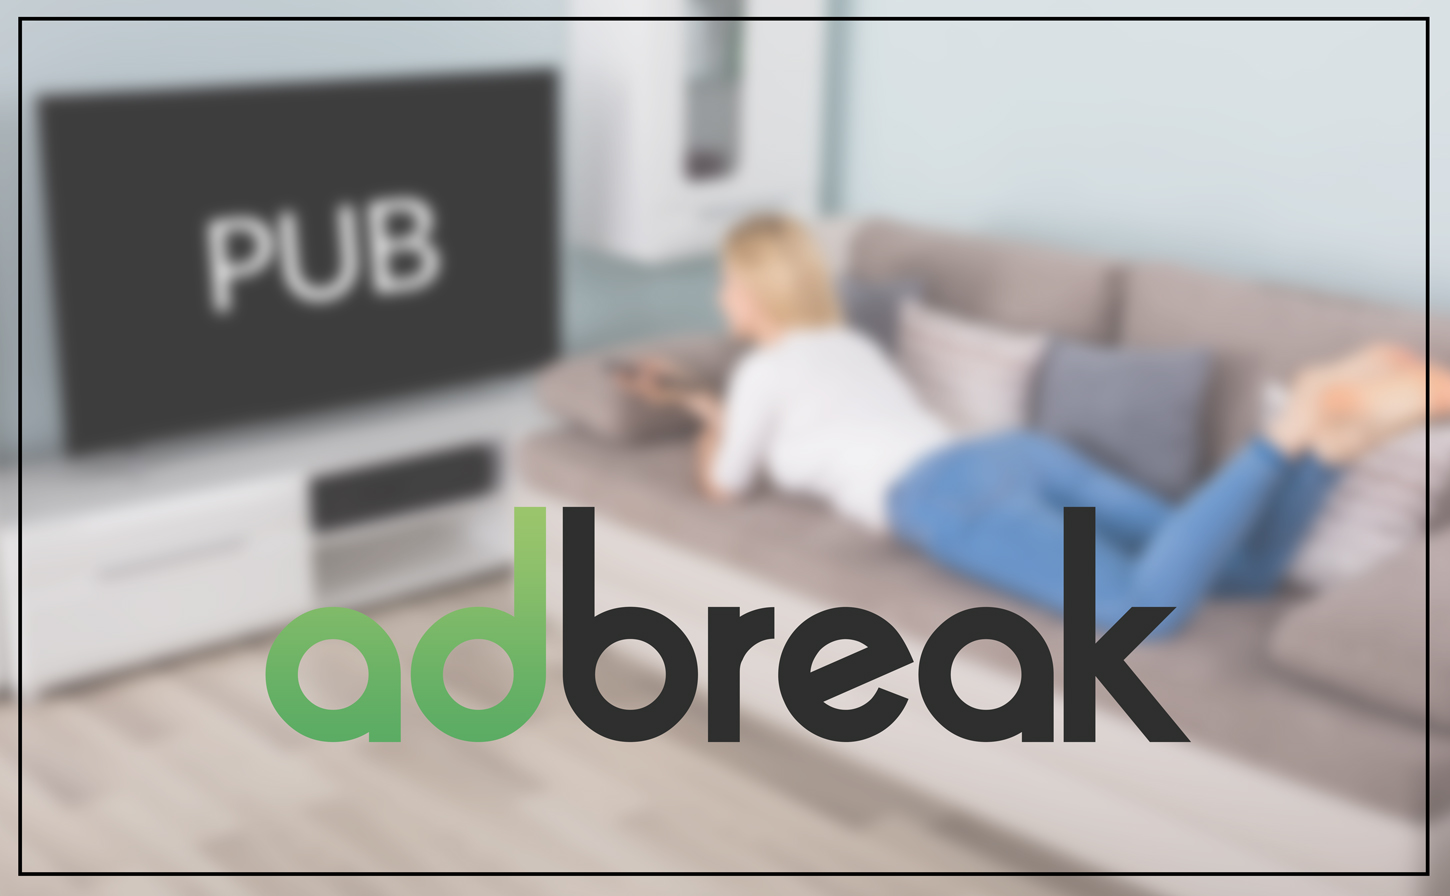 Admo.tv dévoile AdBreak, sa nouvelle fonctionnalité à destination des annonceurs TV